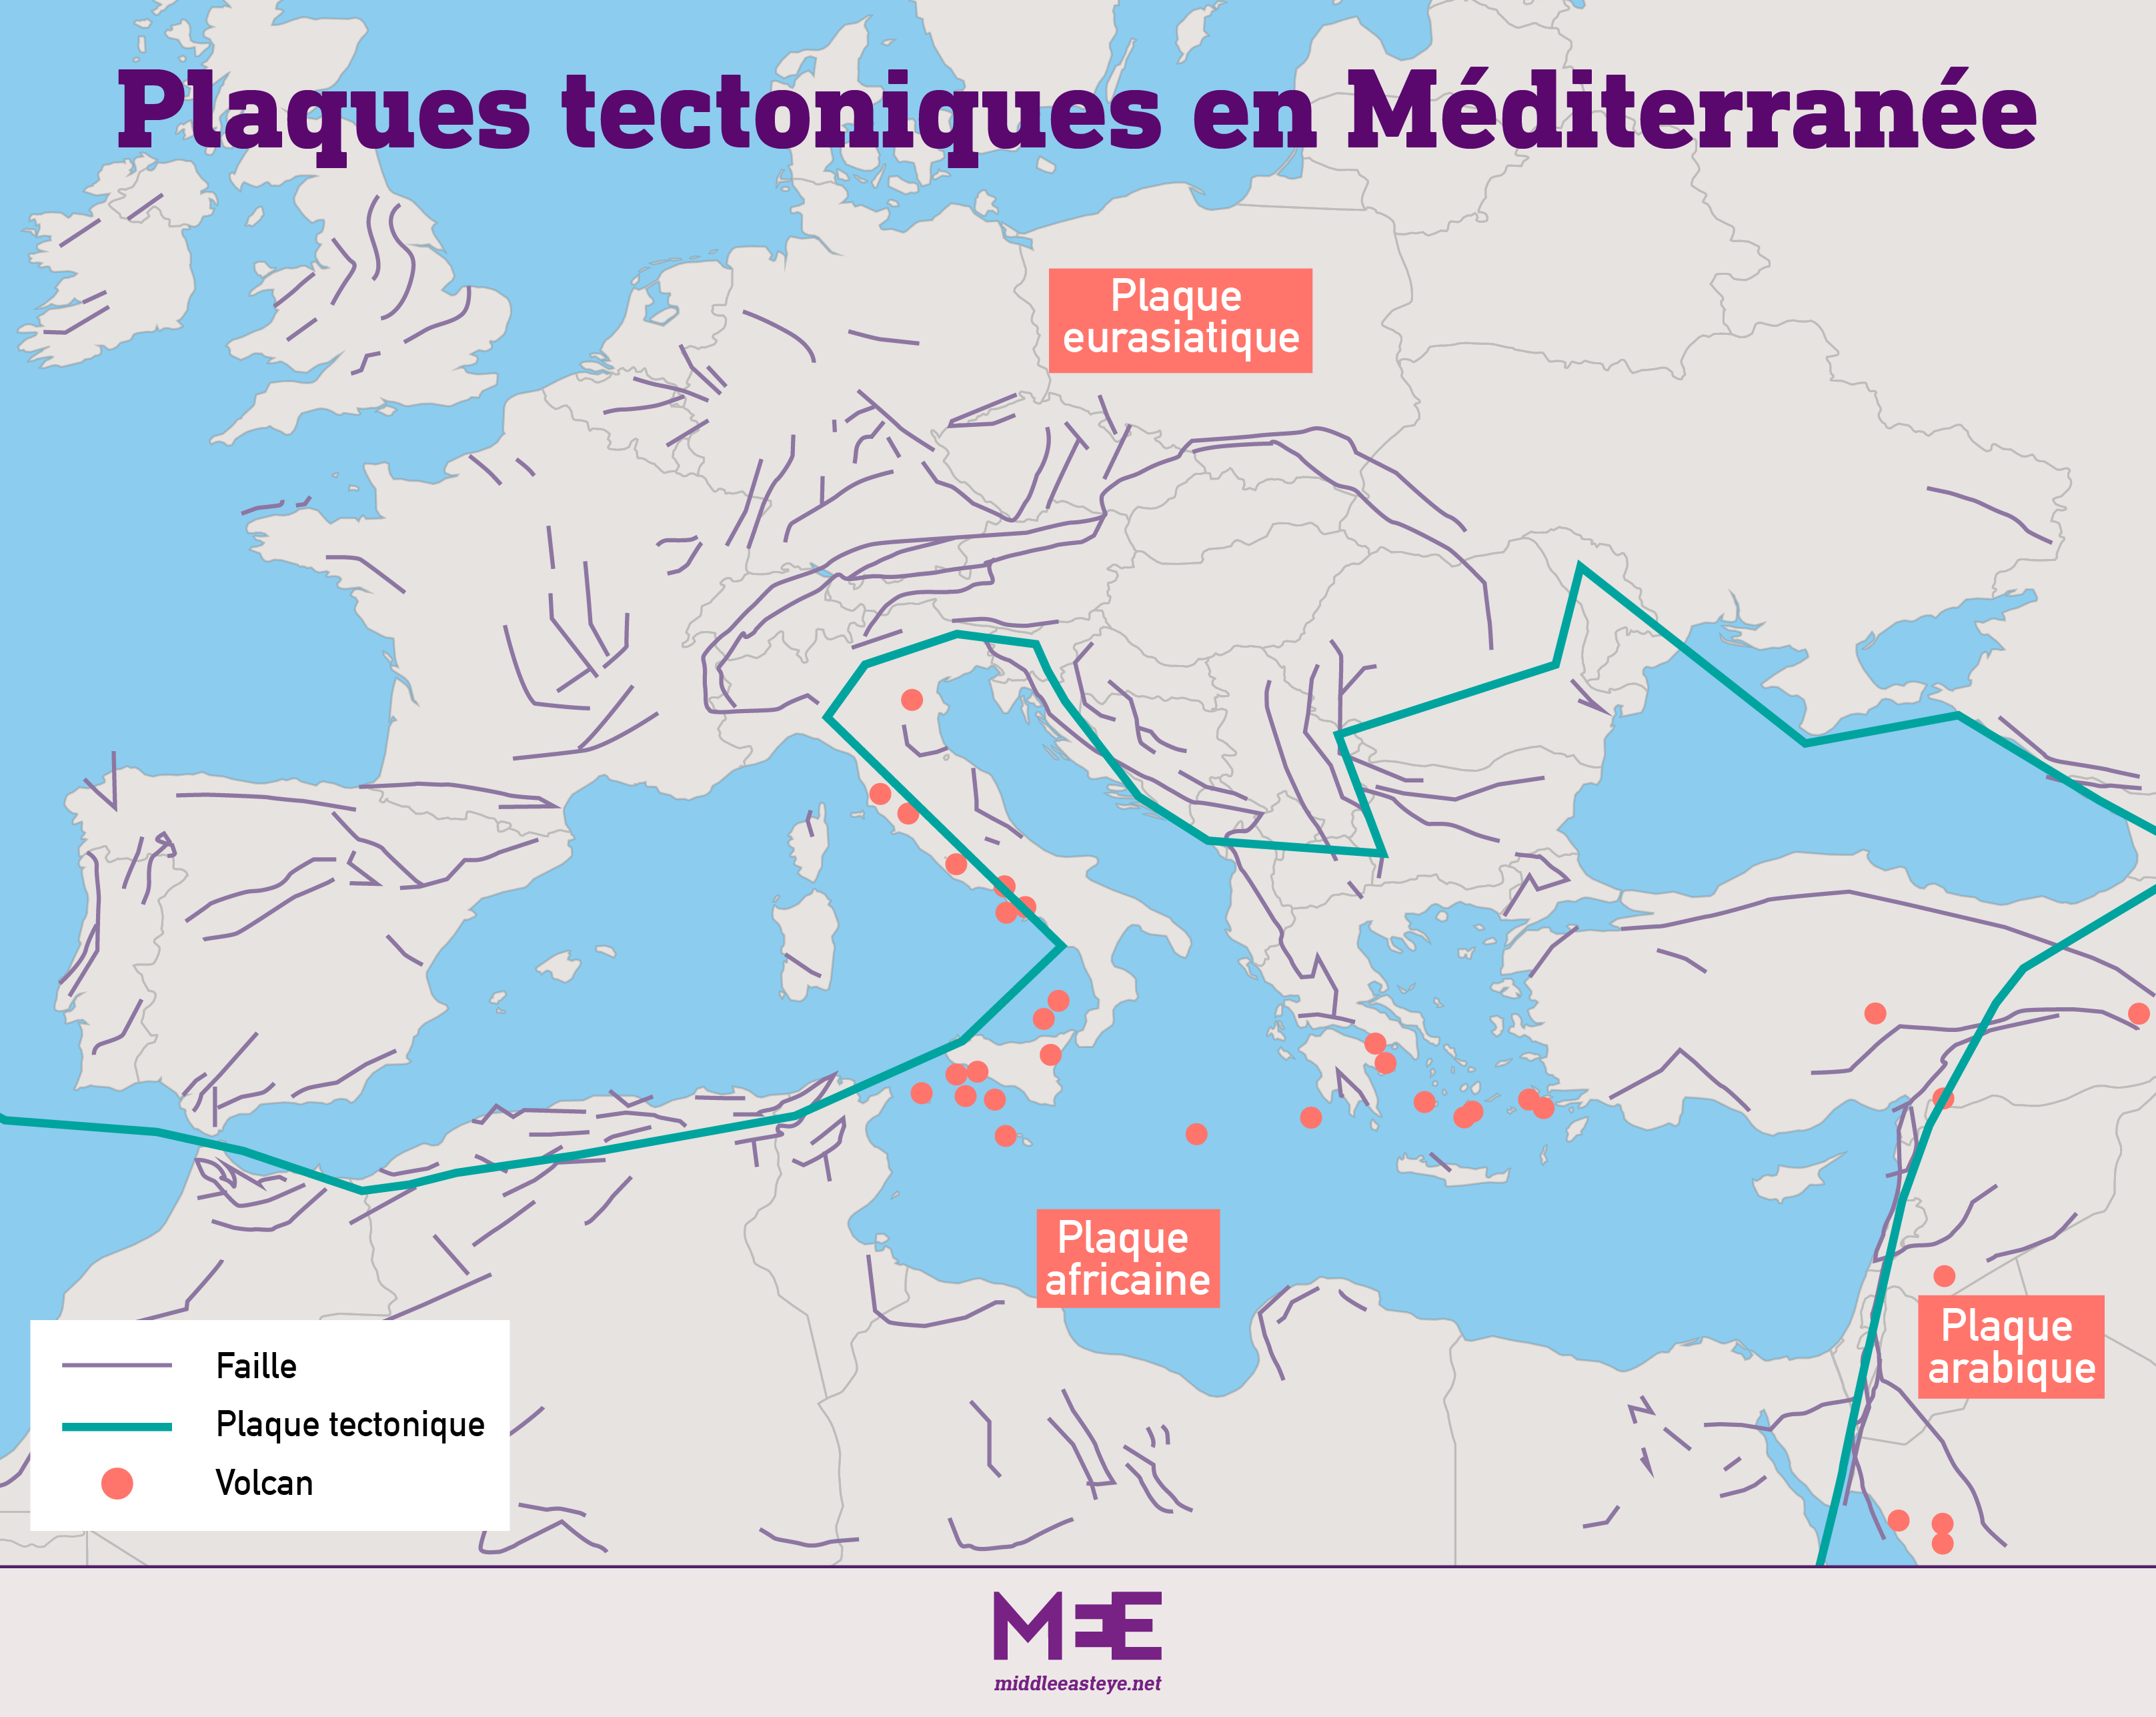 La Méditerranée est située à la rencontre de trois plaques tectoniques : africaine, eurasienne et arabique. Au Maghreb, la plaque africaine, très active, passe sous la plaque eurasienne